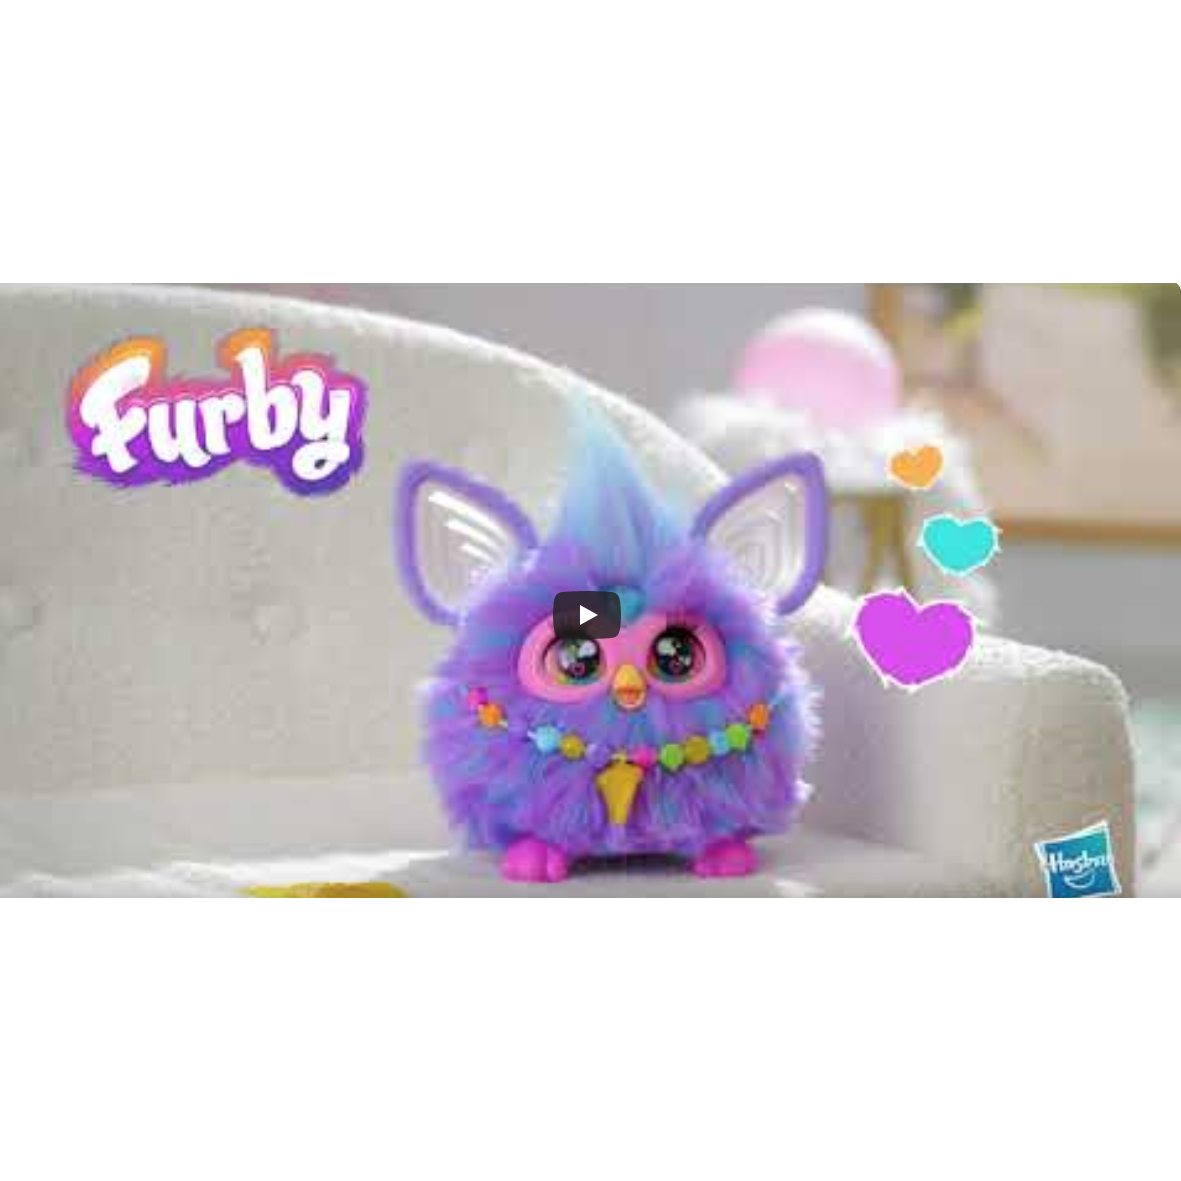 Video como jugar con Furby de Hasbro